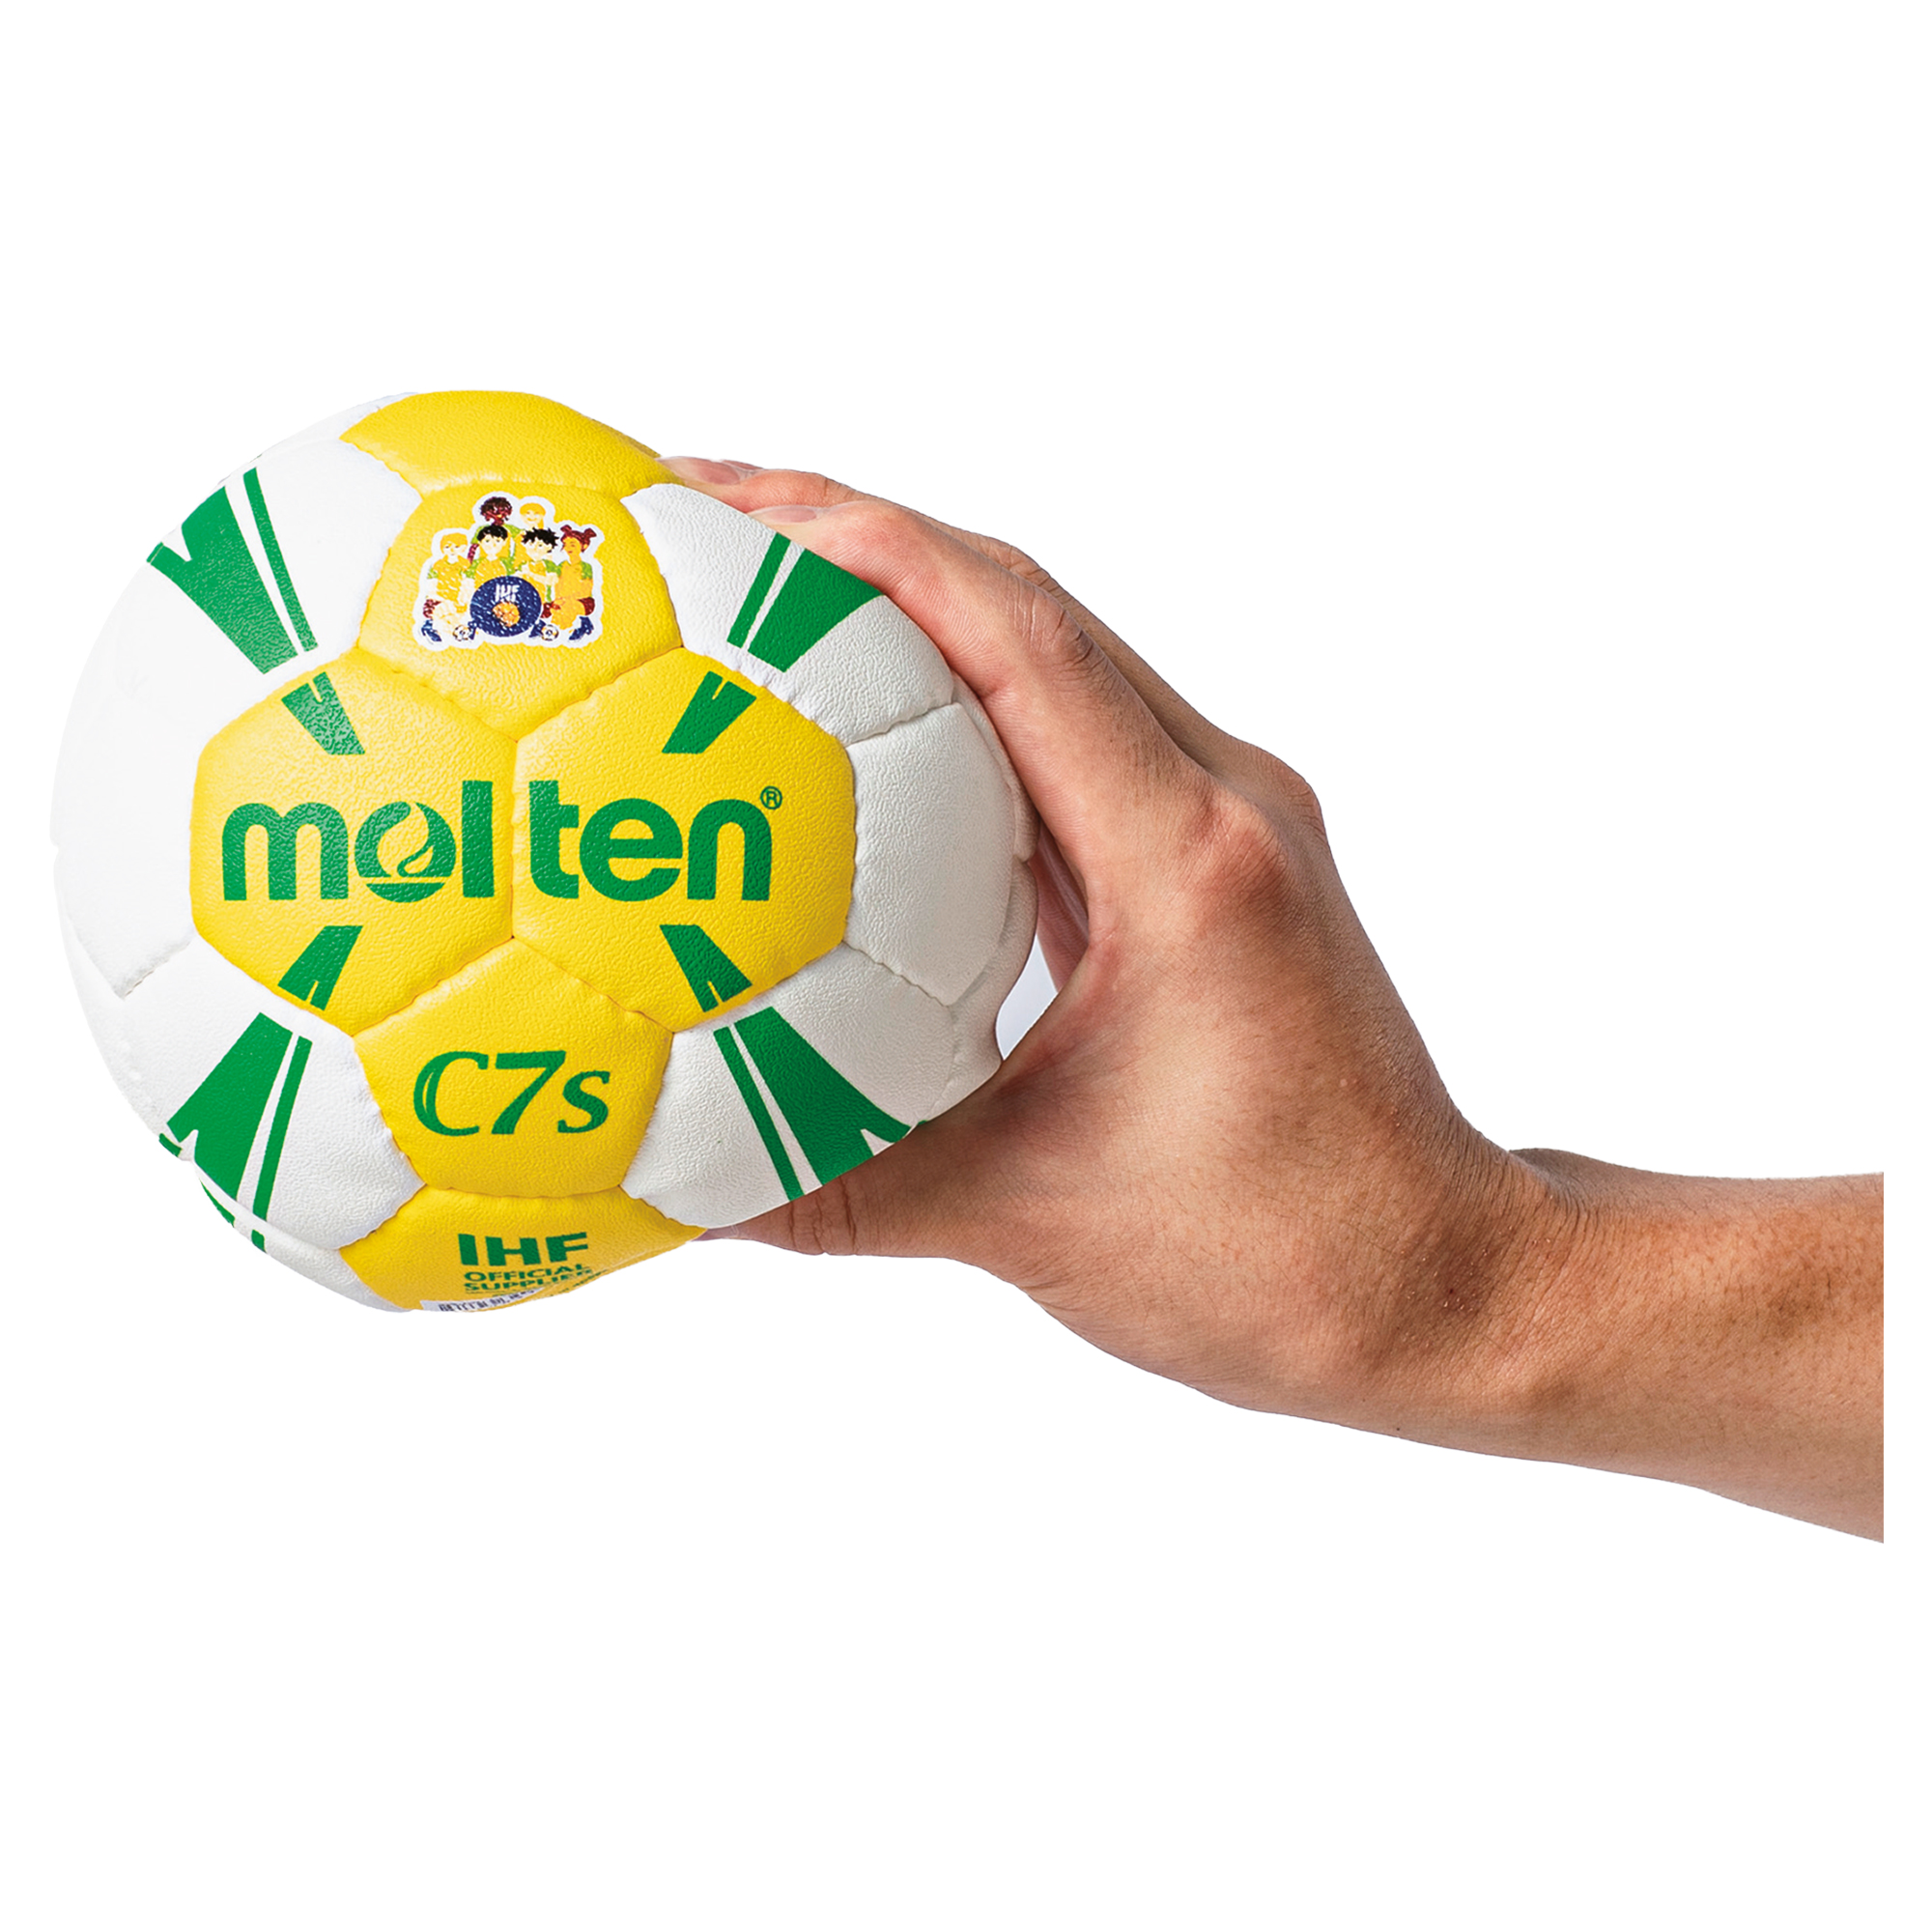 Molten C7s Methodik Handball H00C1300-YW